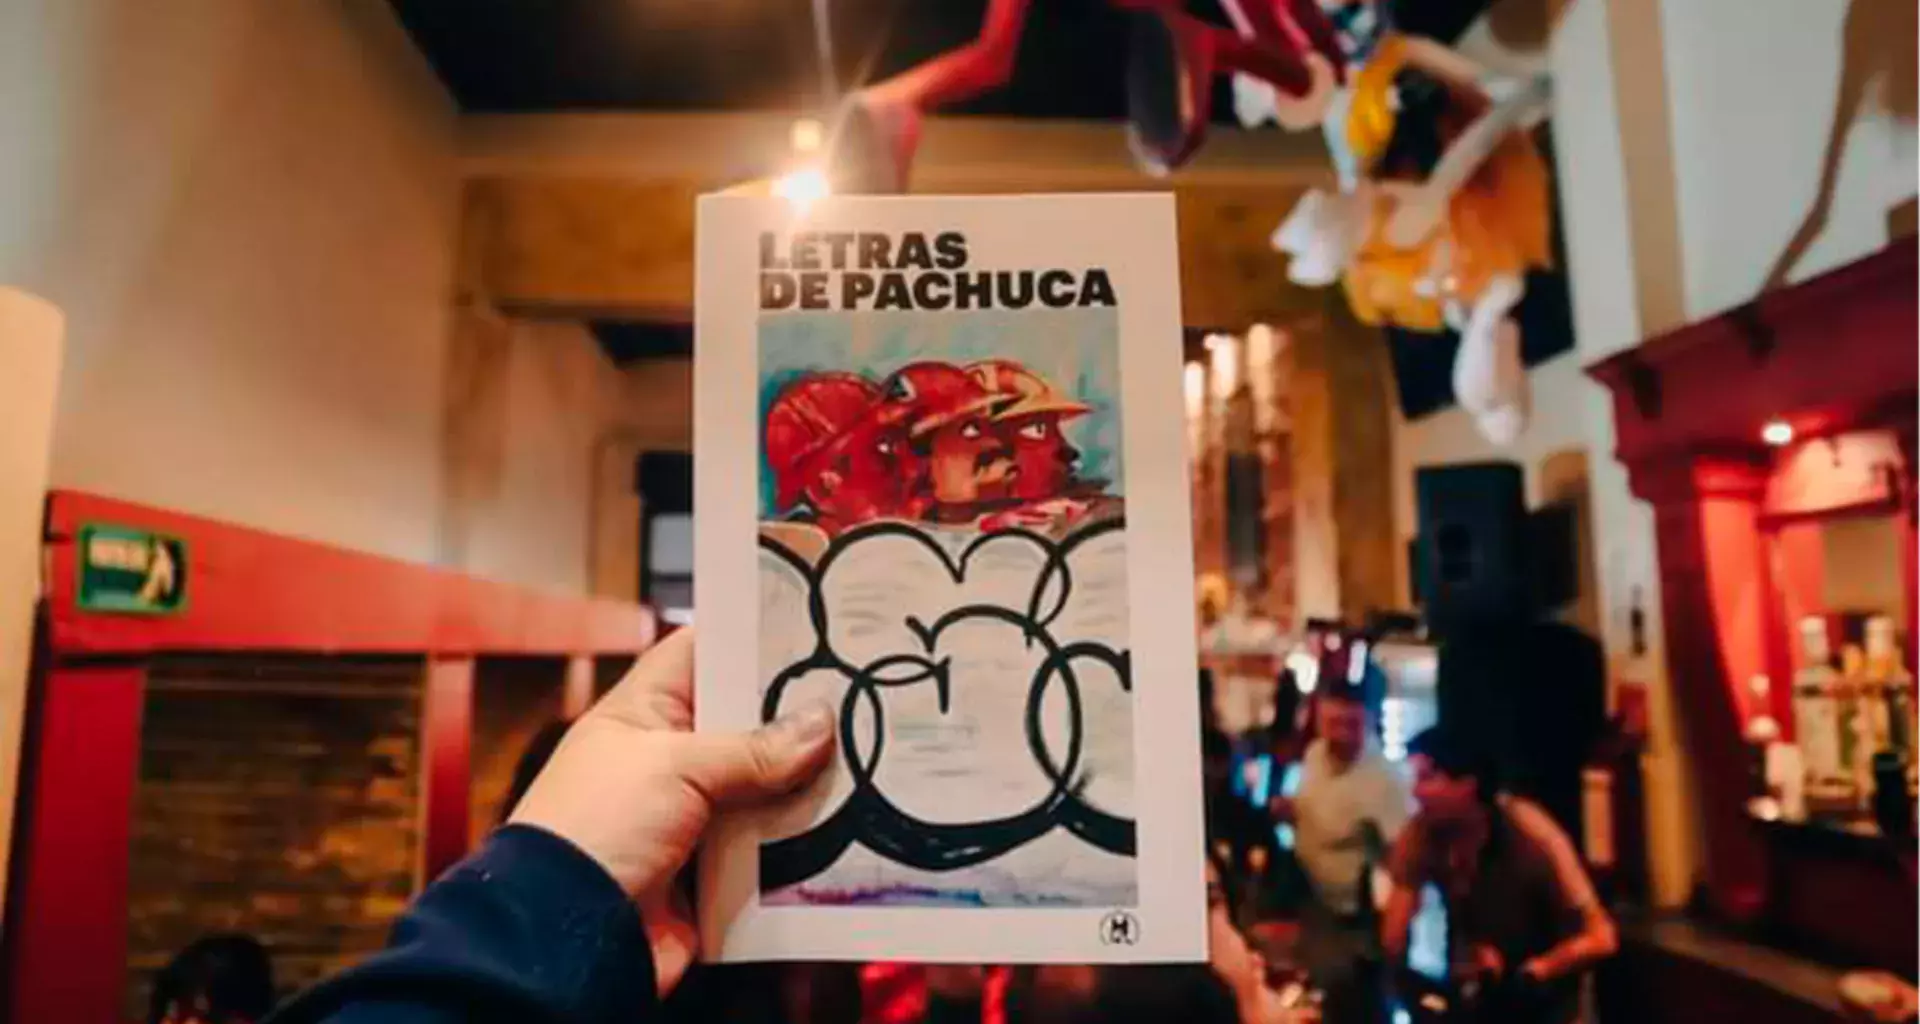 Mano sosteniendo sosteniendo el libro Letras de Pachuca